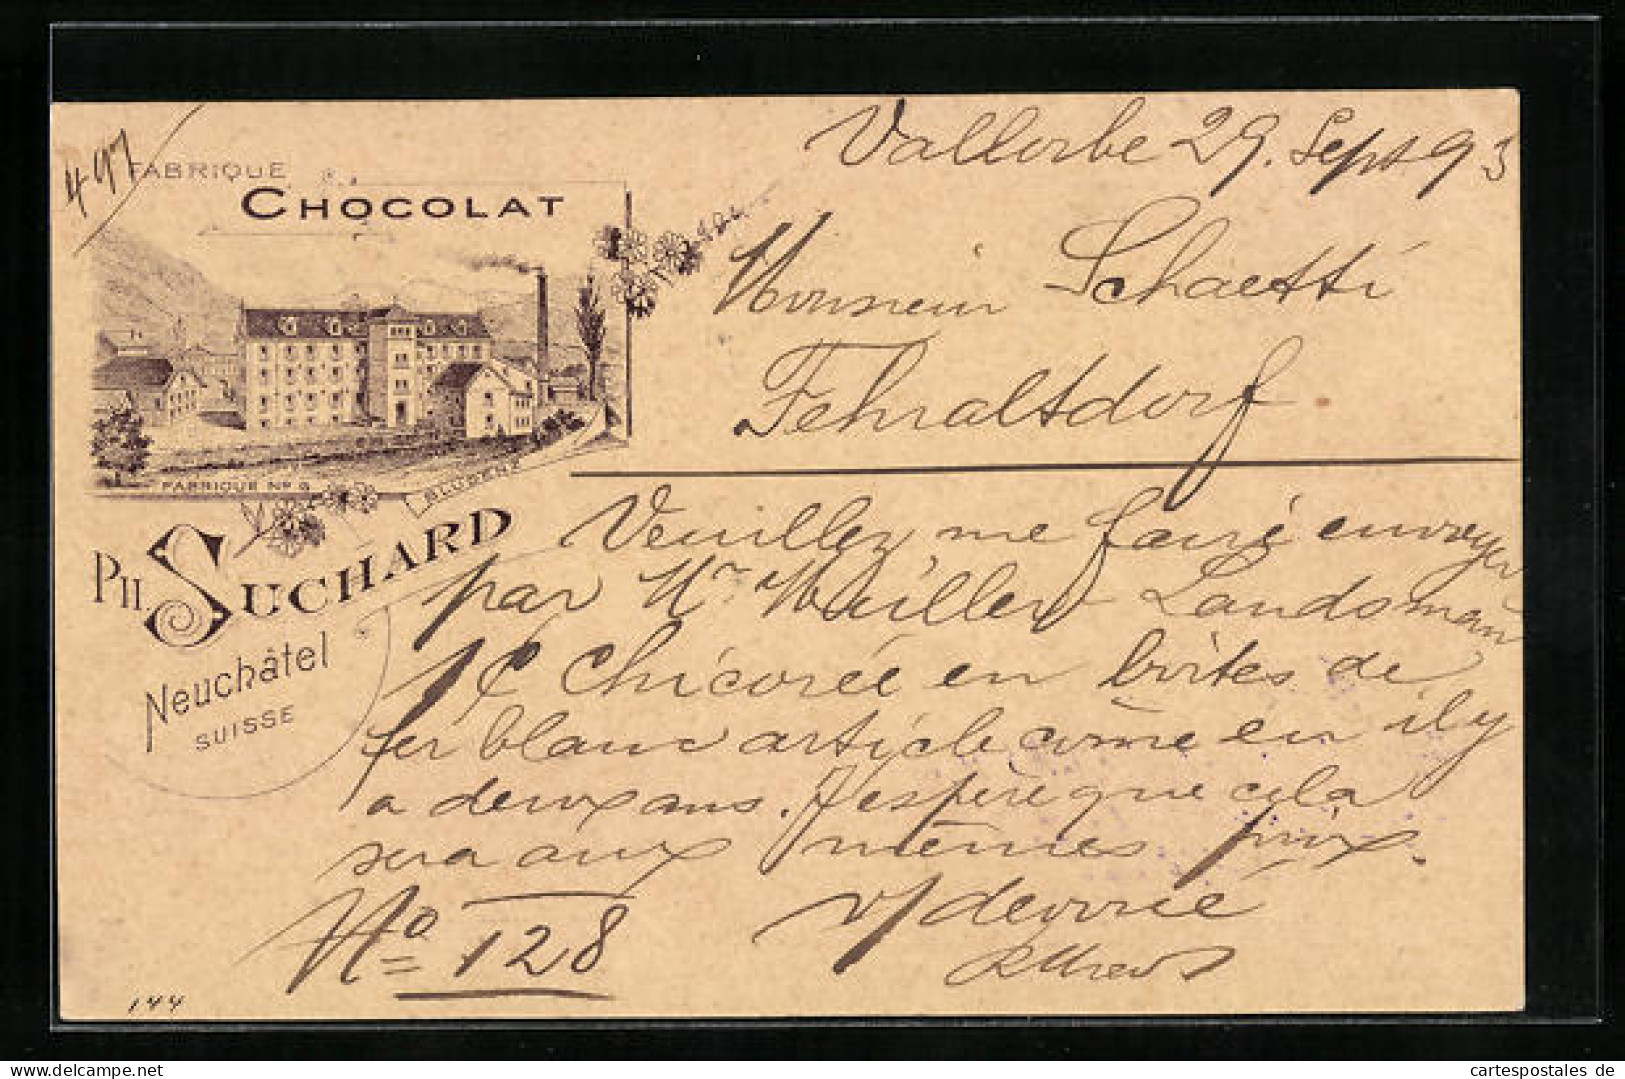 Vorläufer-Lithographie Neuchatel, 1893, Chocolat Suchard, Fabrique No. 6  - Cultivation